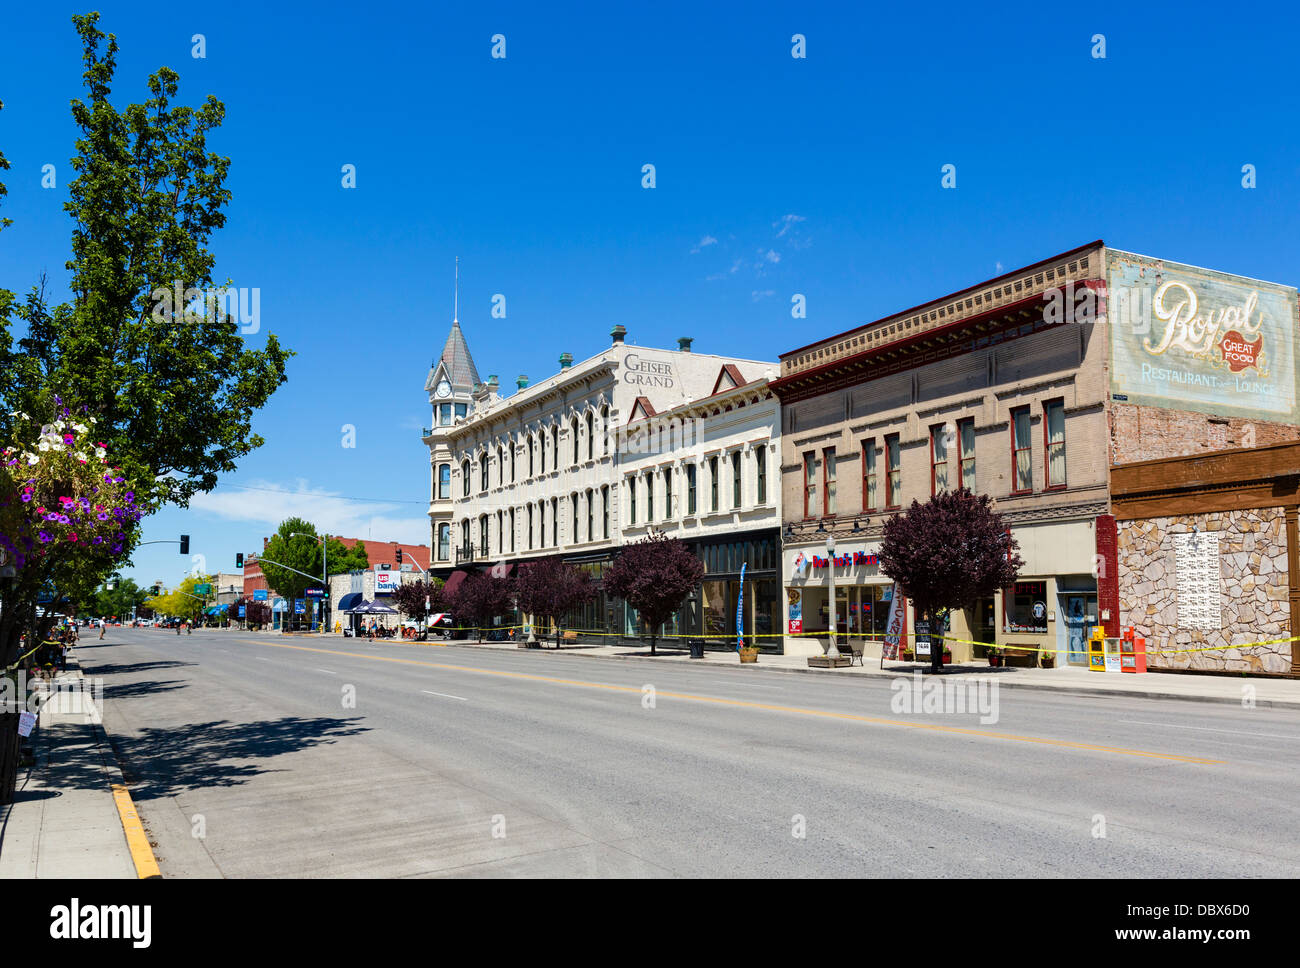 Geiser Grand Hotel historique sur la rue principale au centre-ville de Baker, Nevada, USA Banque D'Images